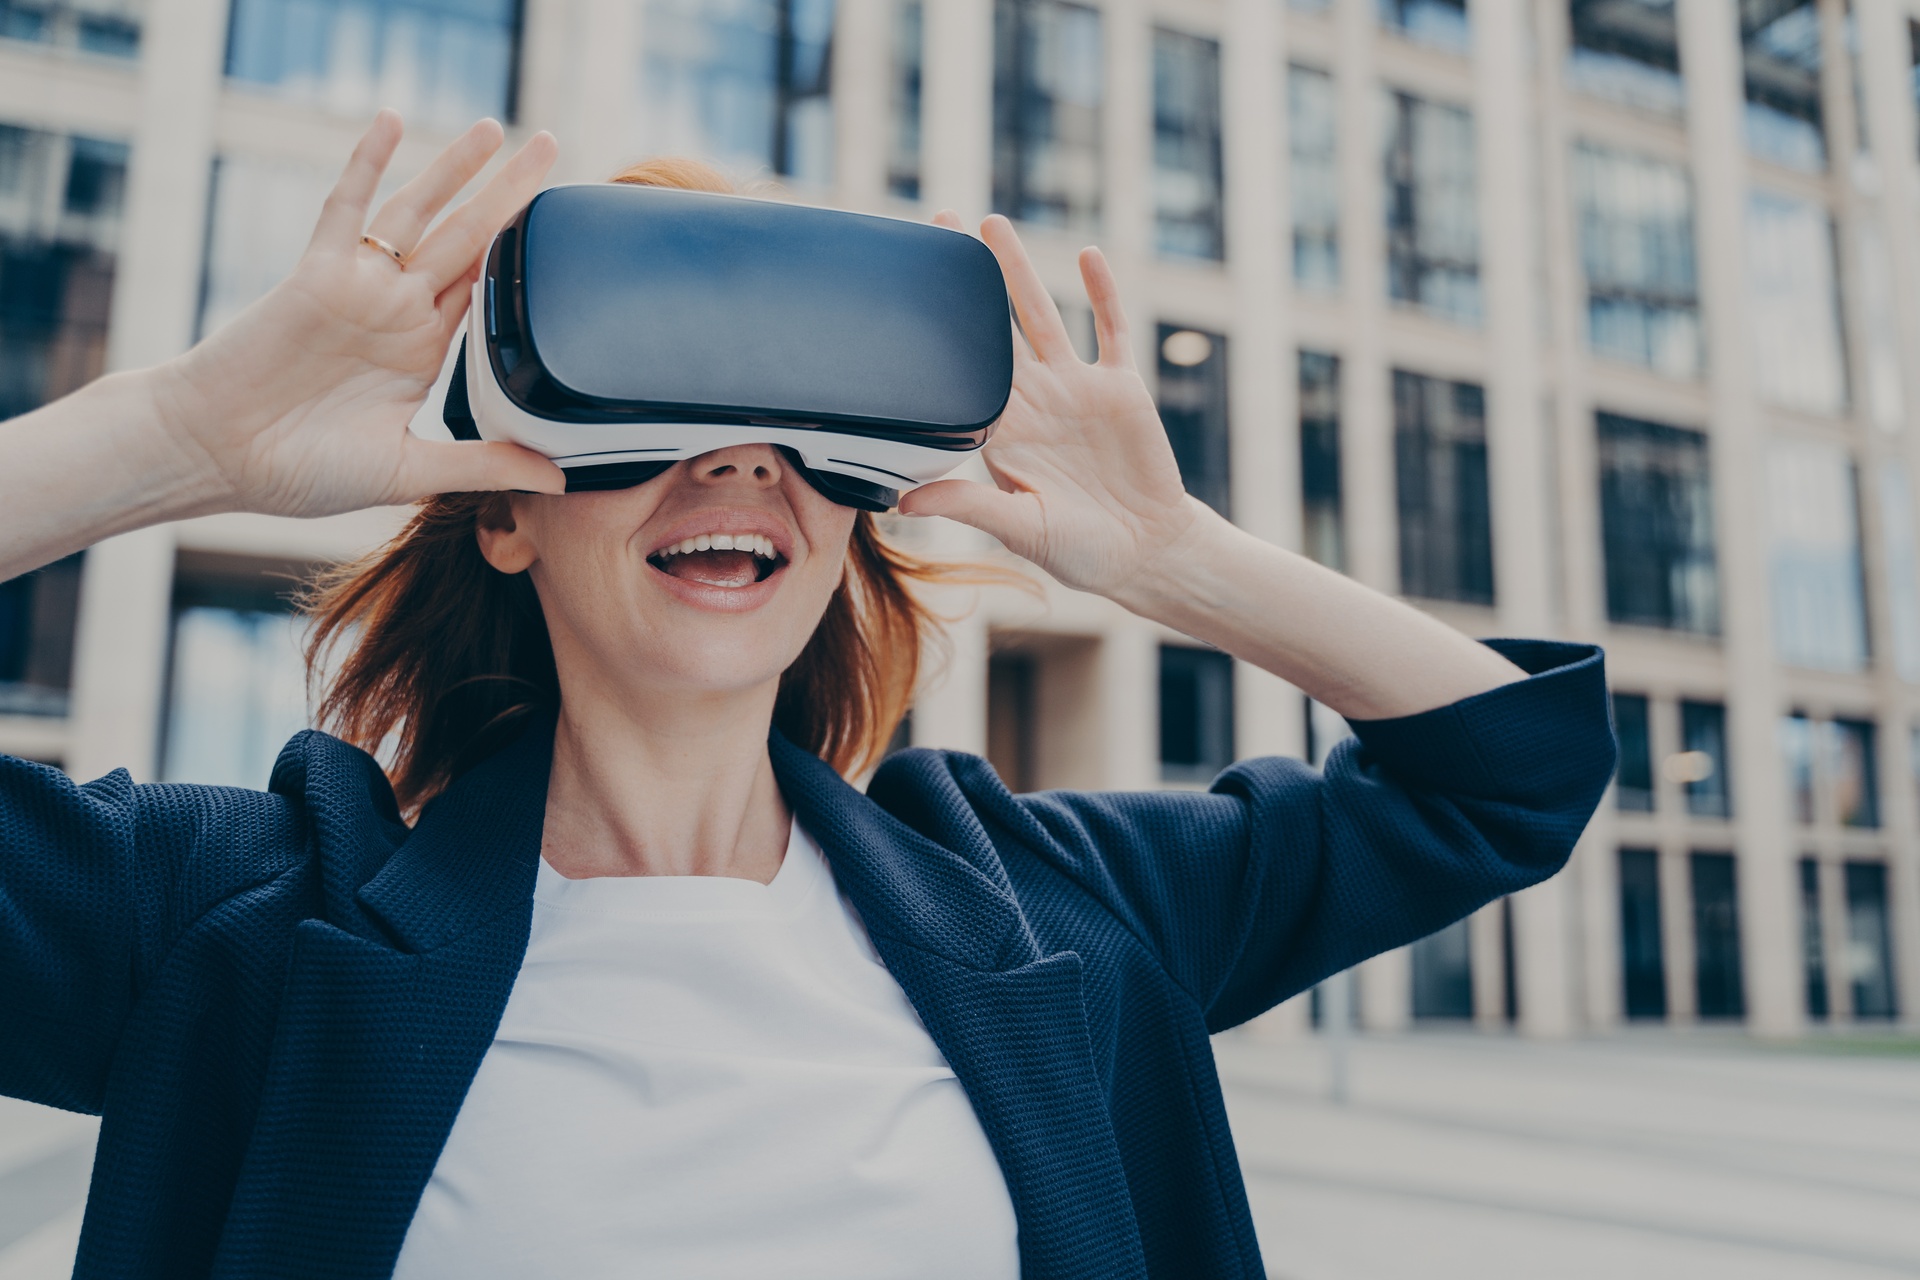 สมาร์ทโฟน 6G: ผู้ชม Virtual Reality ยังคงเทอะทะและอึดอัด แต่ประมาณปี 2030 ทุกอย่างอาจเปลี่ยนแปลงได้